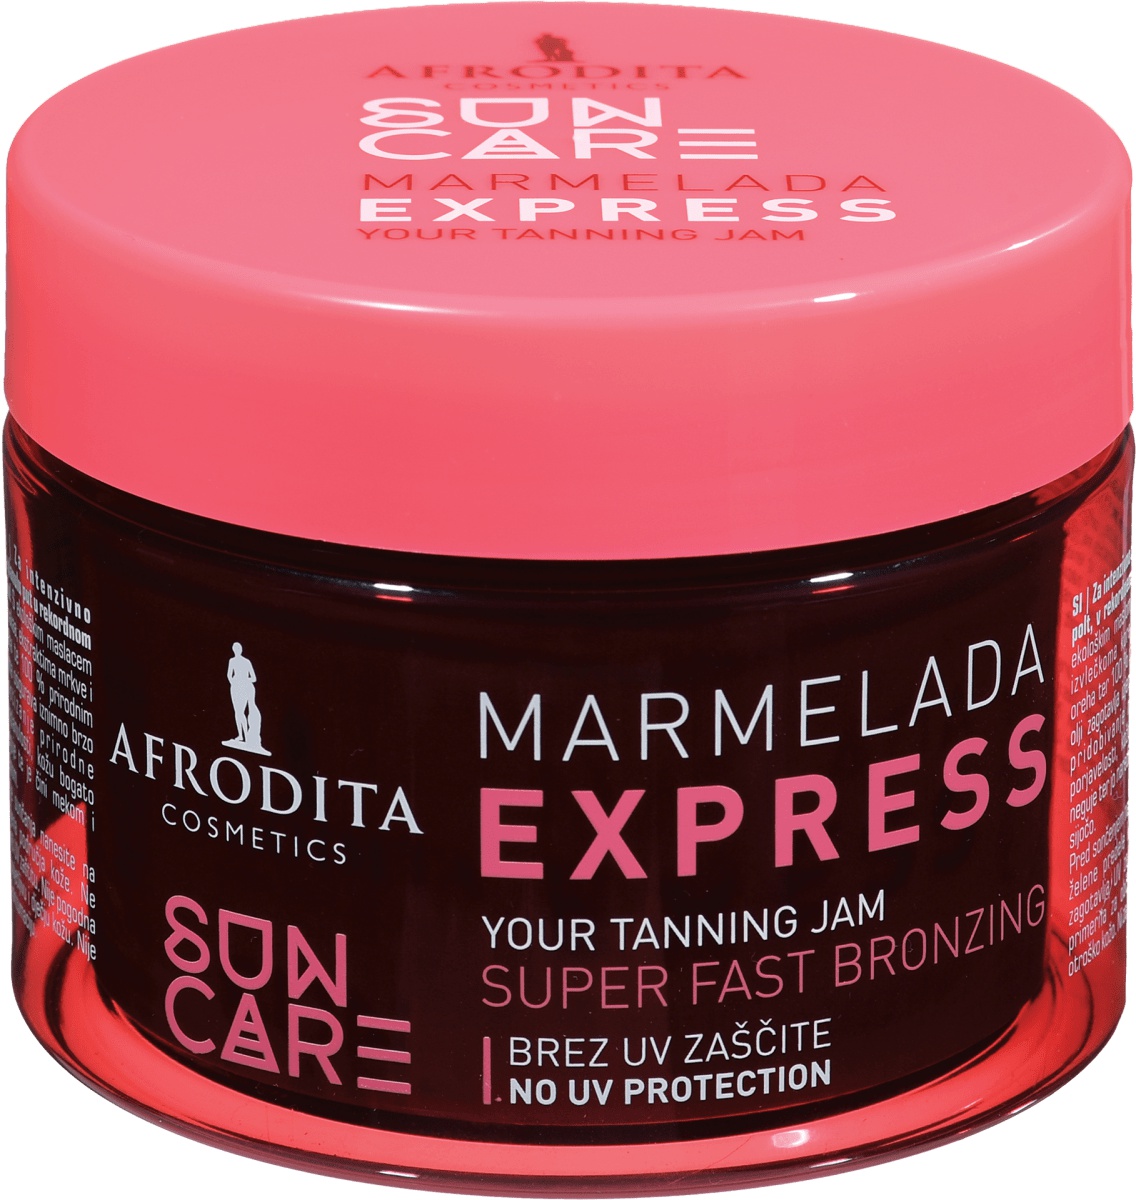 Afrodita Sun Care Marmelada Express Tanning Jam